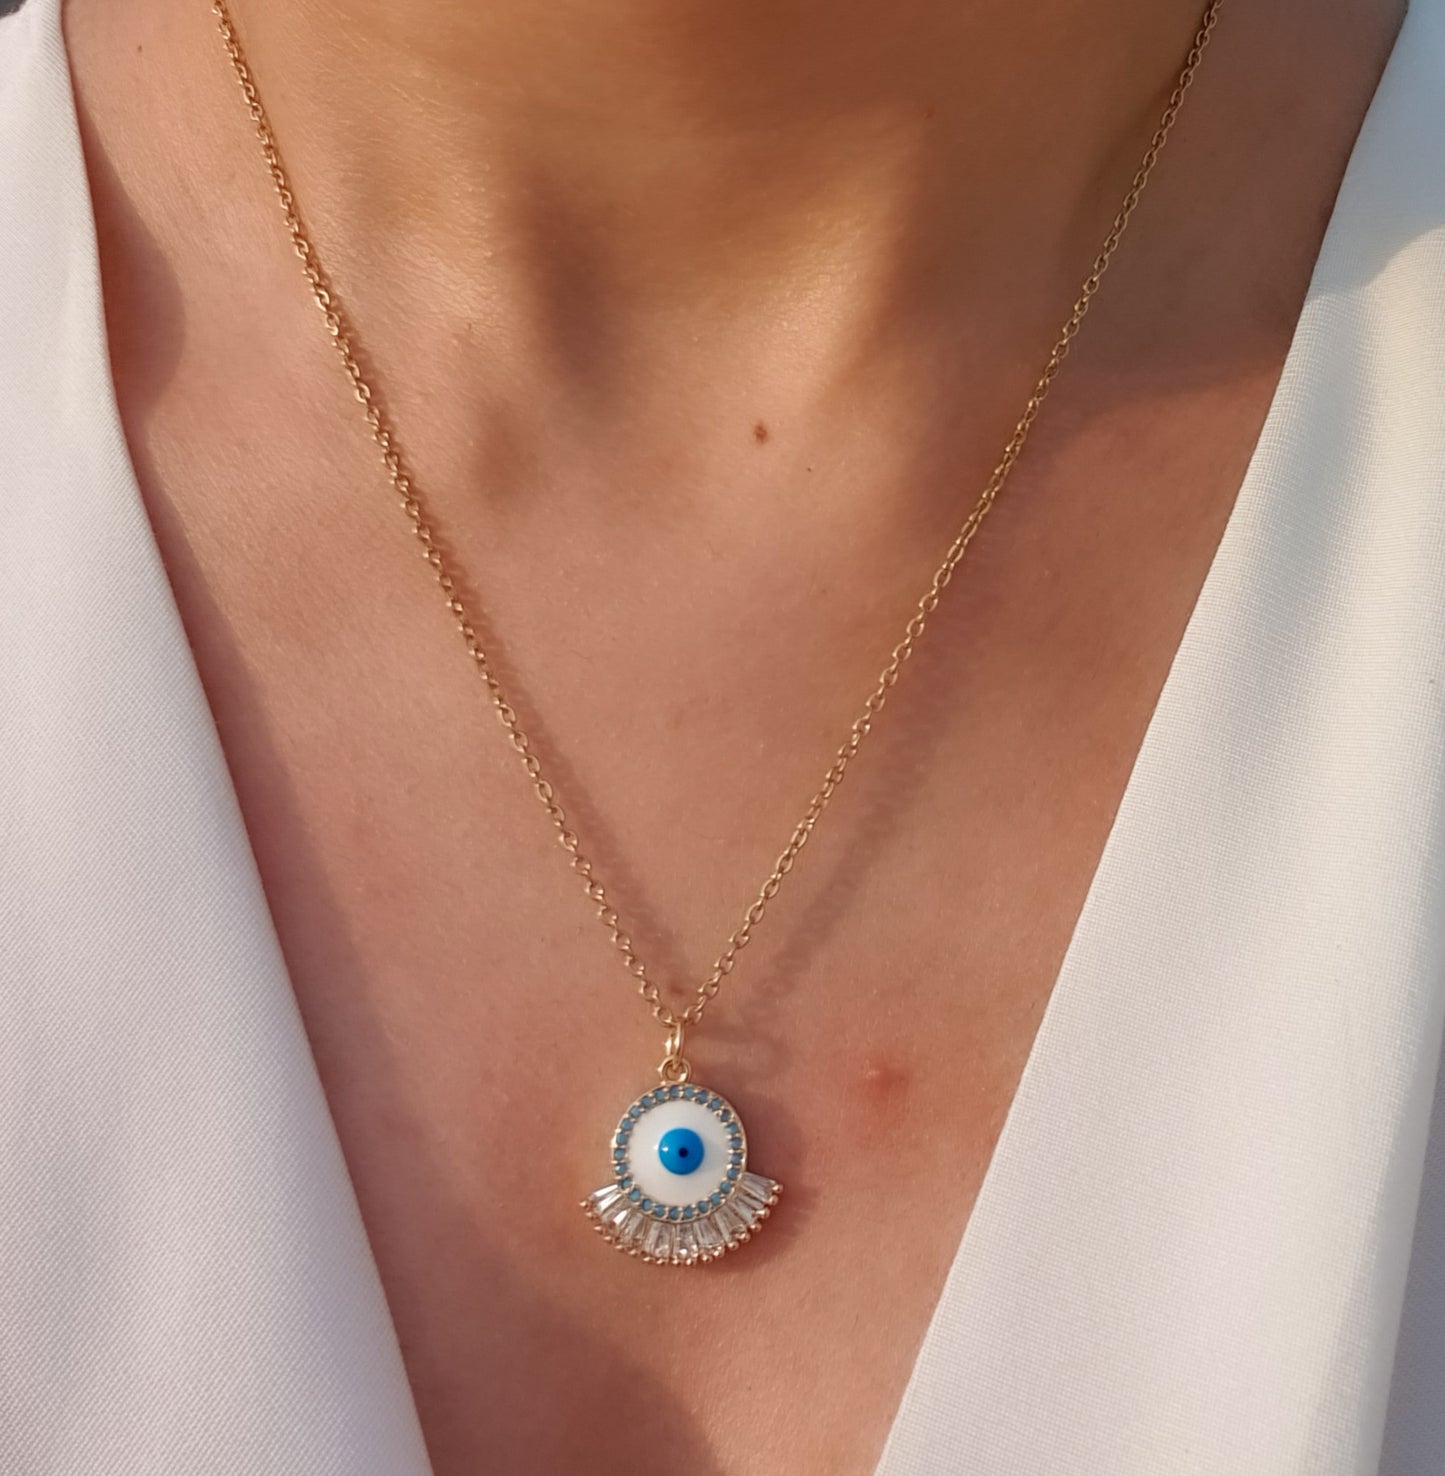 White Eyed Evil Eye Necklace